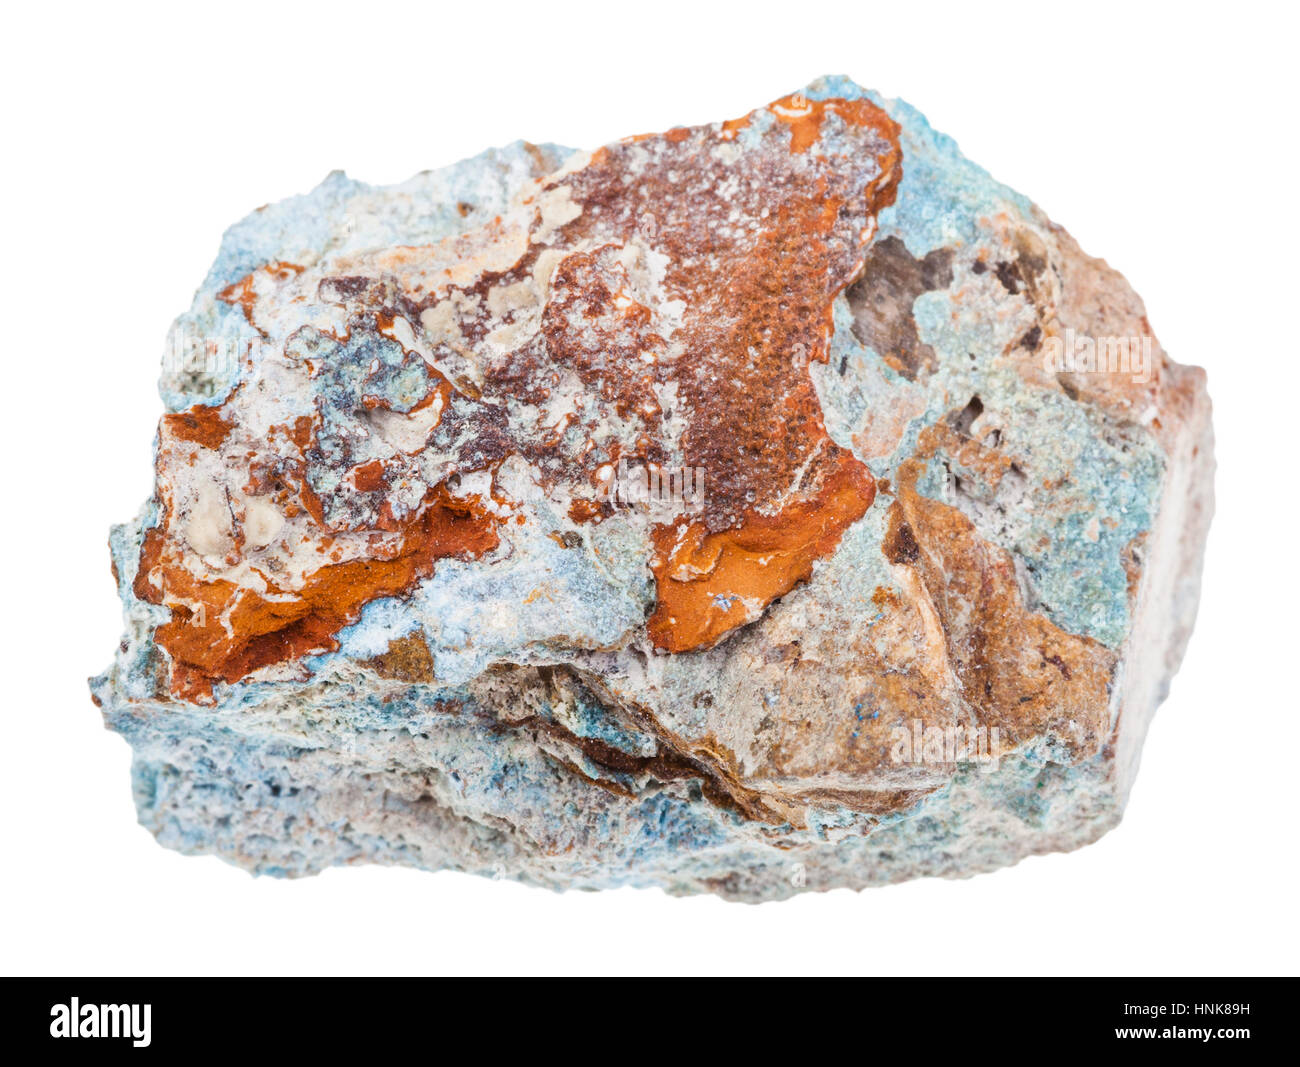 Makro-Aufnahmen der geologischen Sammlung Mineral - Stück Scorodite Stein (Arsen Erz) isoliert auf weißem Hintergrund Stockfoto